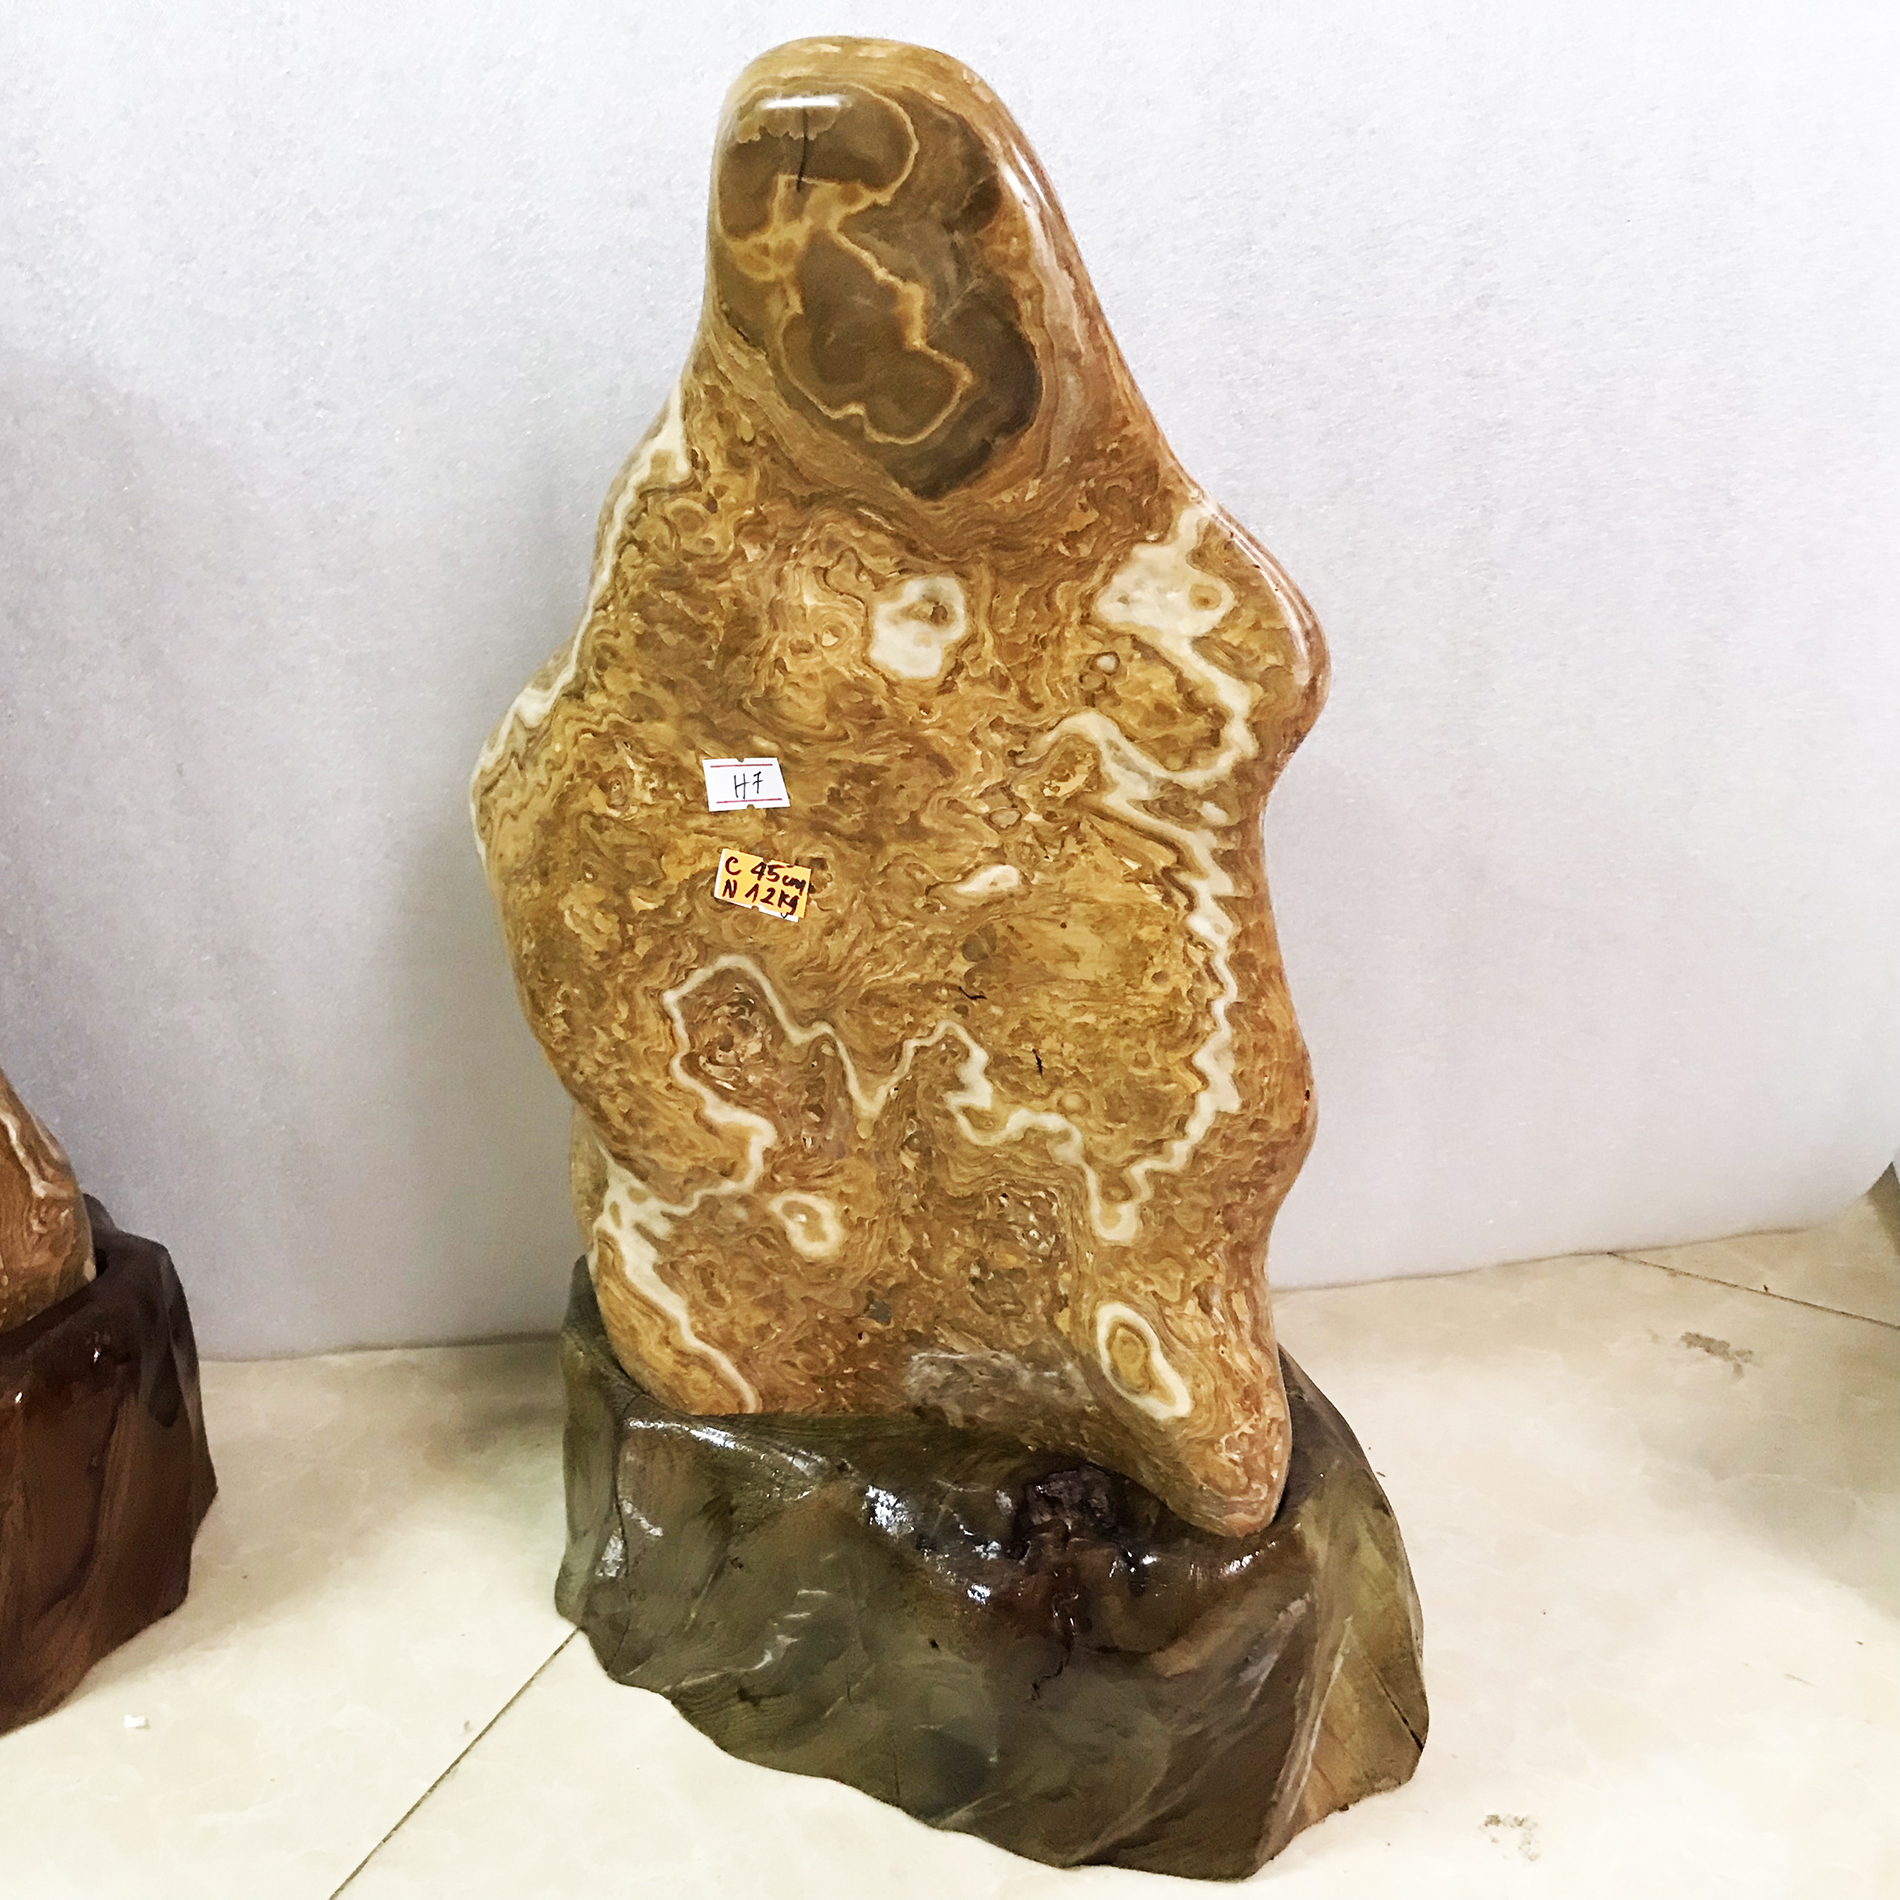 Cây đá màu vàng vân gỗ nặng 12 kg cao 50 cm cho người mệnh Kim và Thổ đá tự nhiên chân đế gỗ rừng